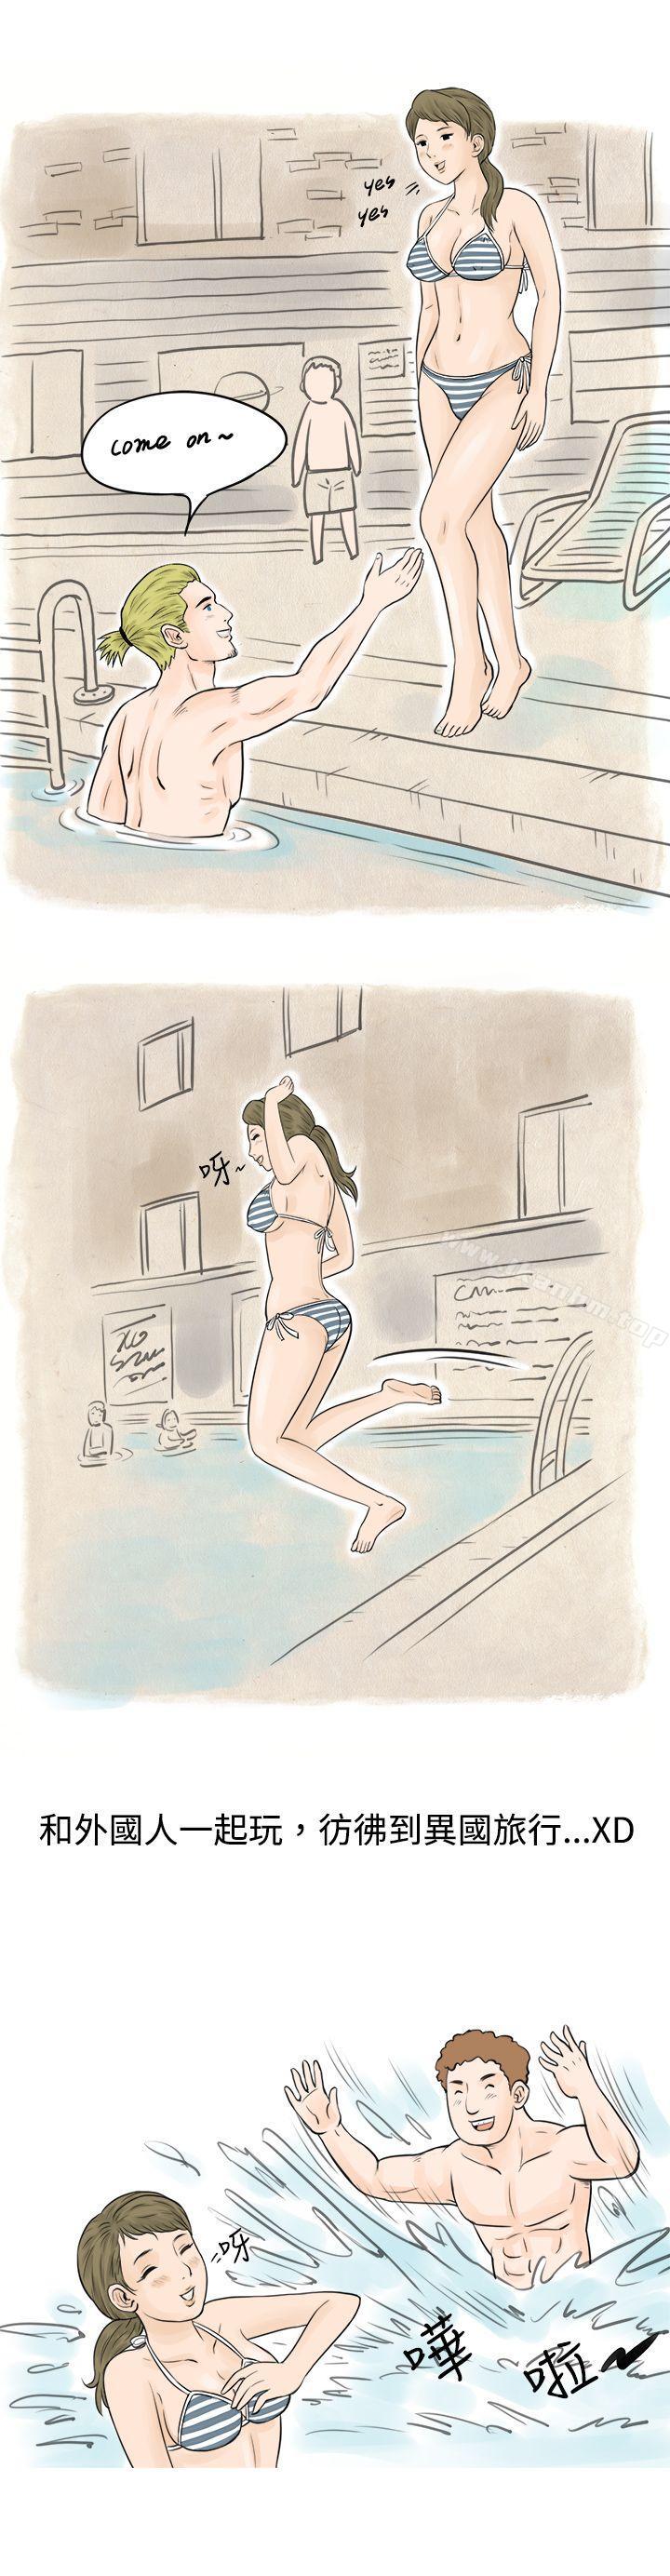 漫画韩国 秘密Story   - 立即阅读 秘密Story 在梨泰院遊泳池中的小故事(上)第11漫画图片